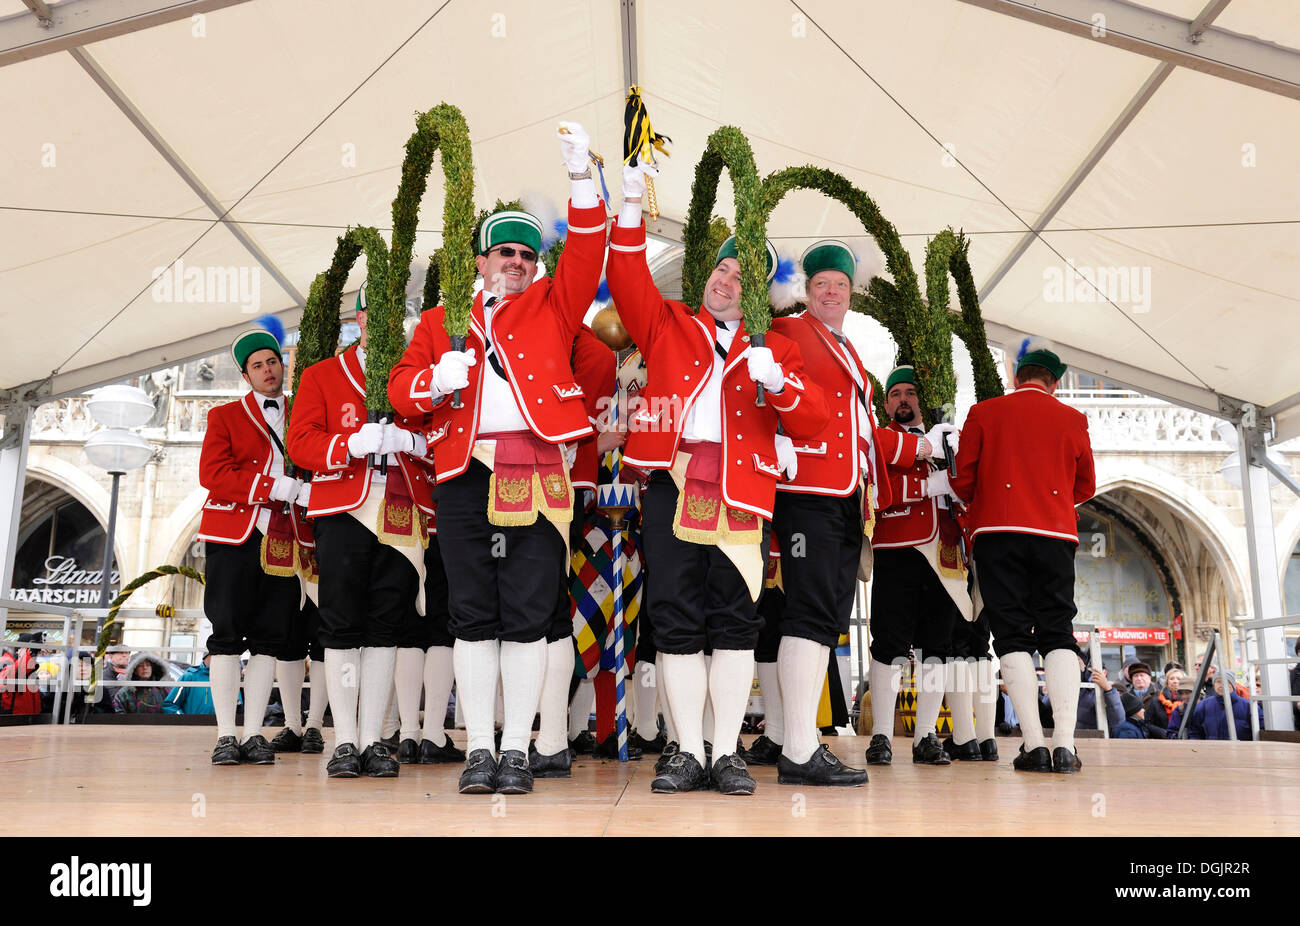 Schaefflertanz, spectacle de danse traditionnelle à la place Marienplatz, la danse est effectuée tous les 7 ans entre l'épiphanie Banque D'Images